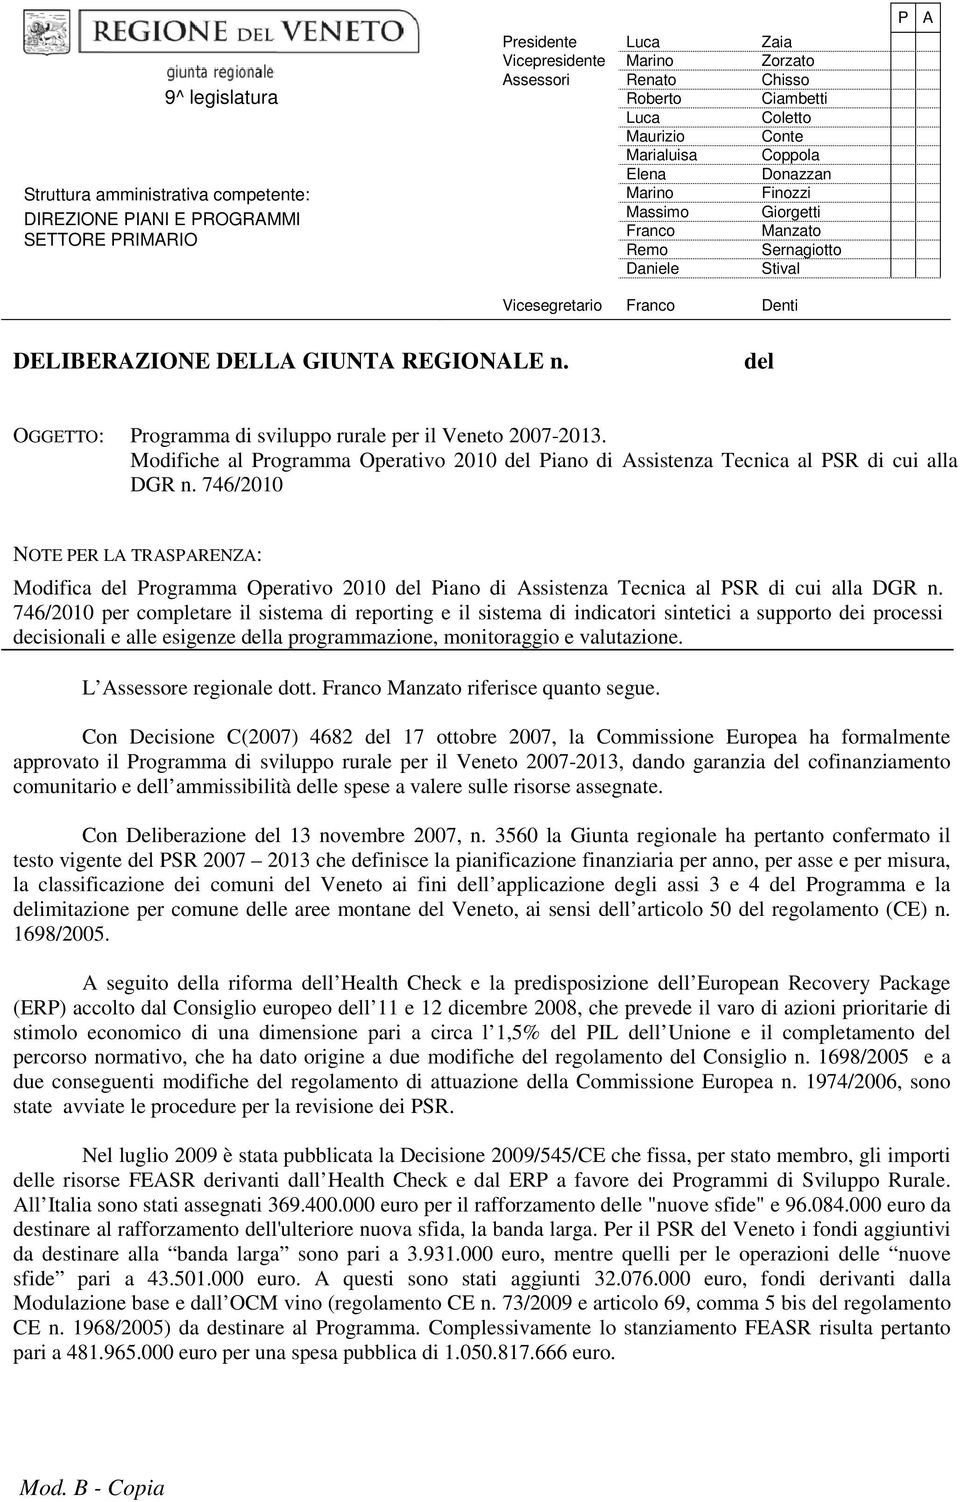 REGIONALE n. del OGGETTO: Programma di sviluppo rurale per il Veneto 2007-2013. Modifiche al Programma Operativo 2010 del Piano di Assistenza Tecnica al PSR di cui alla DGR n.